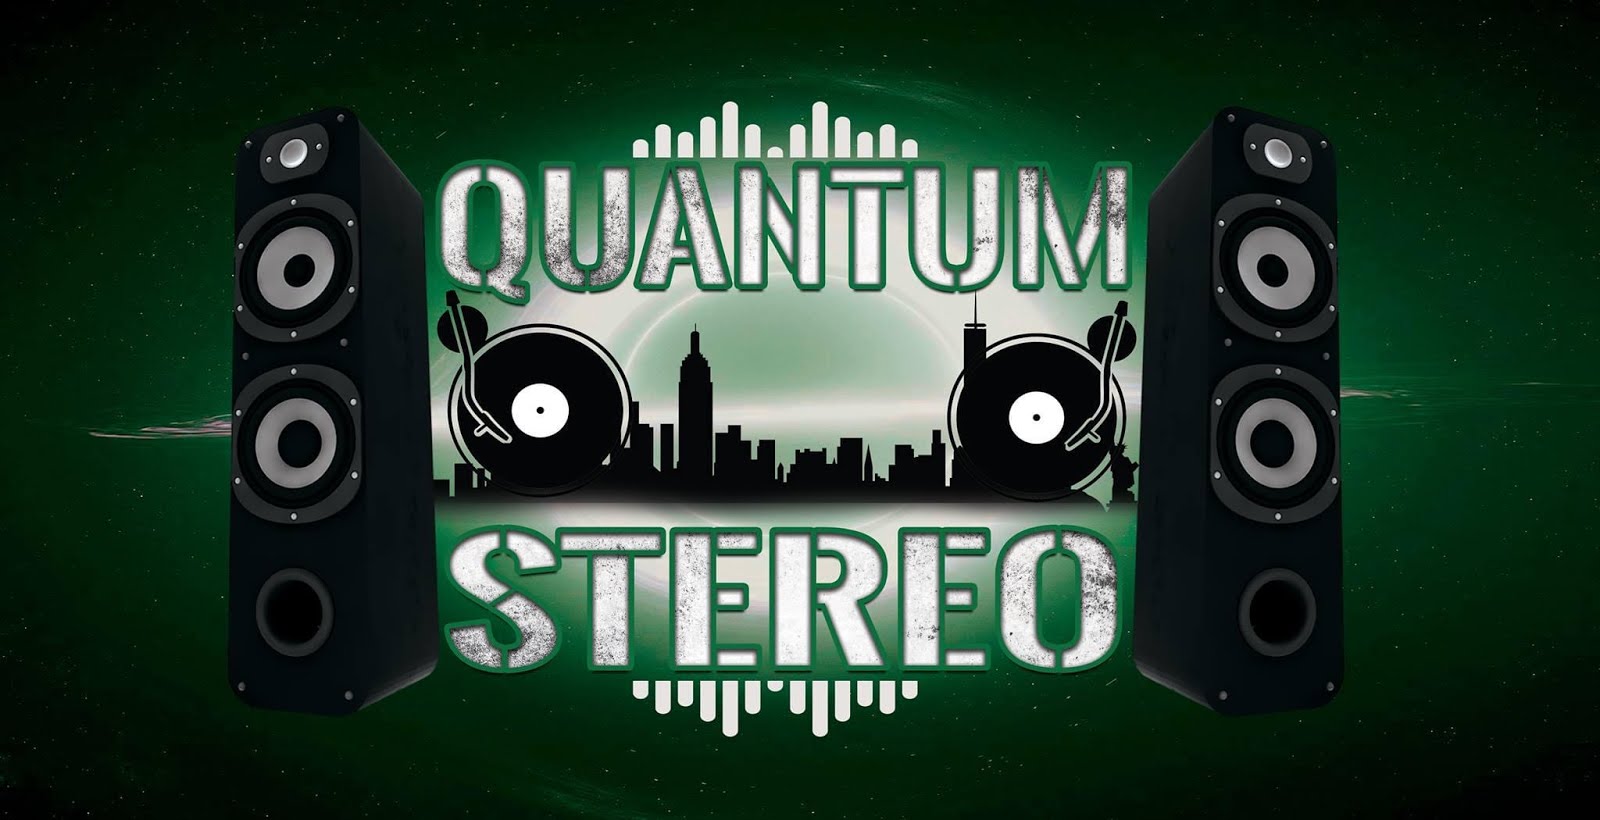 Quantum Stereo Radio